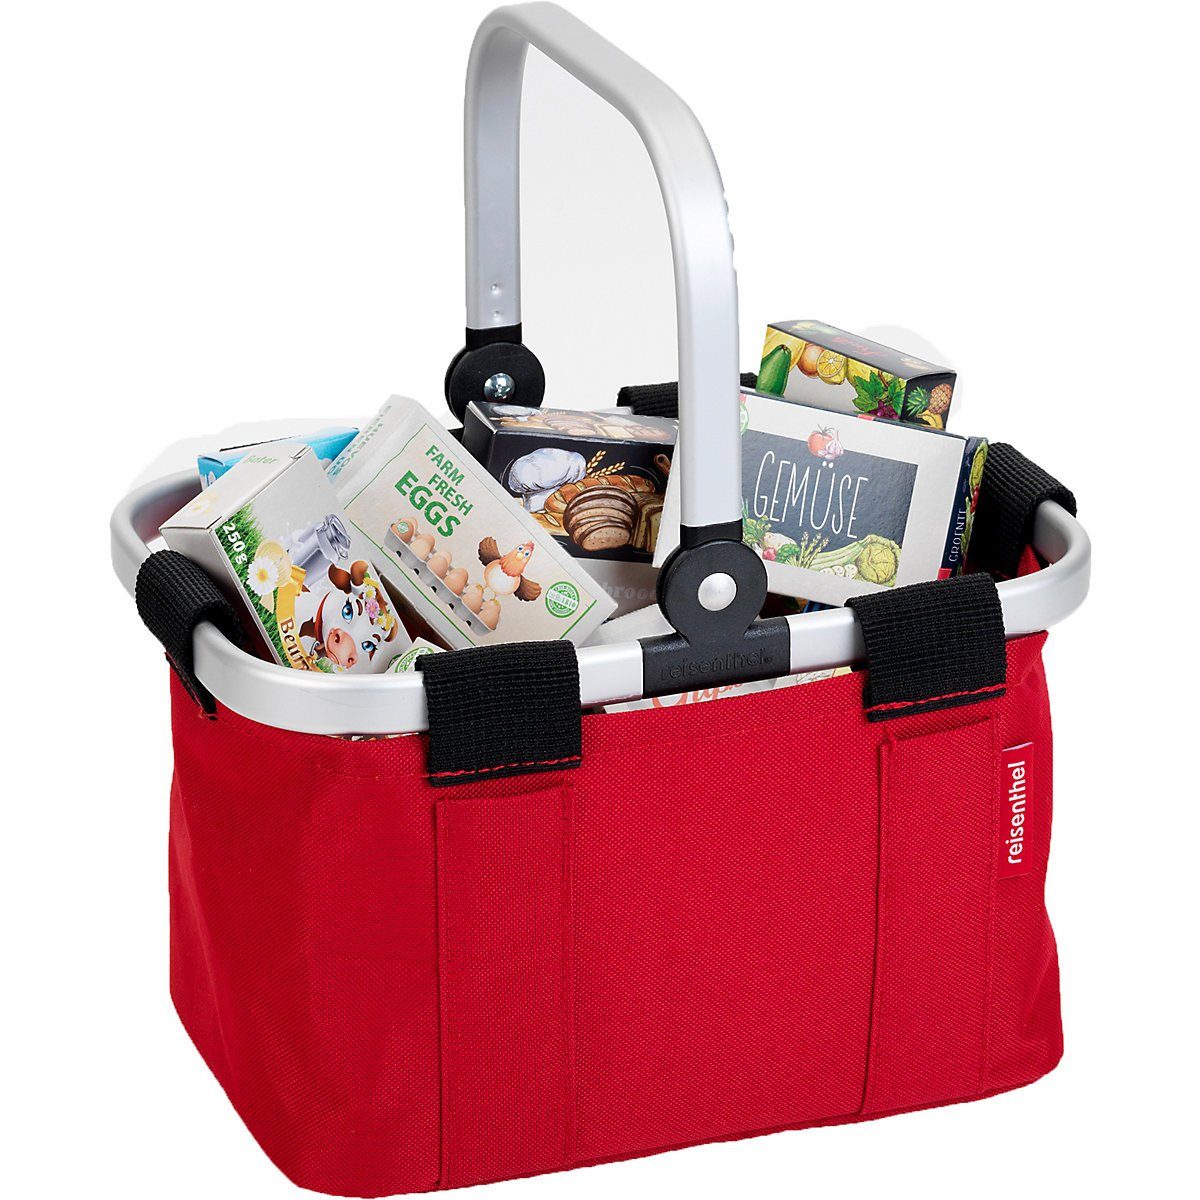 REISENTHEL® Spiel-Einkaufswagen »Reisenthel Einkaufskorb Carrybag mini«